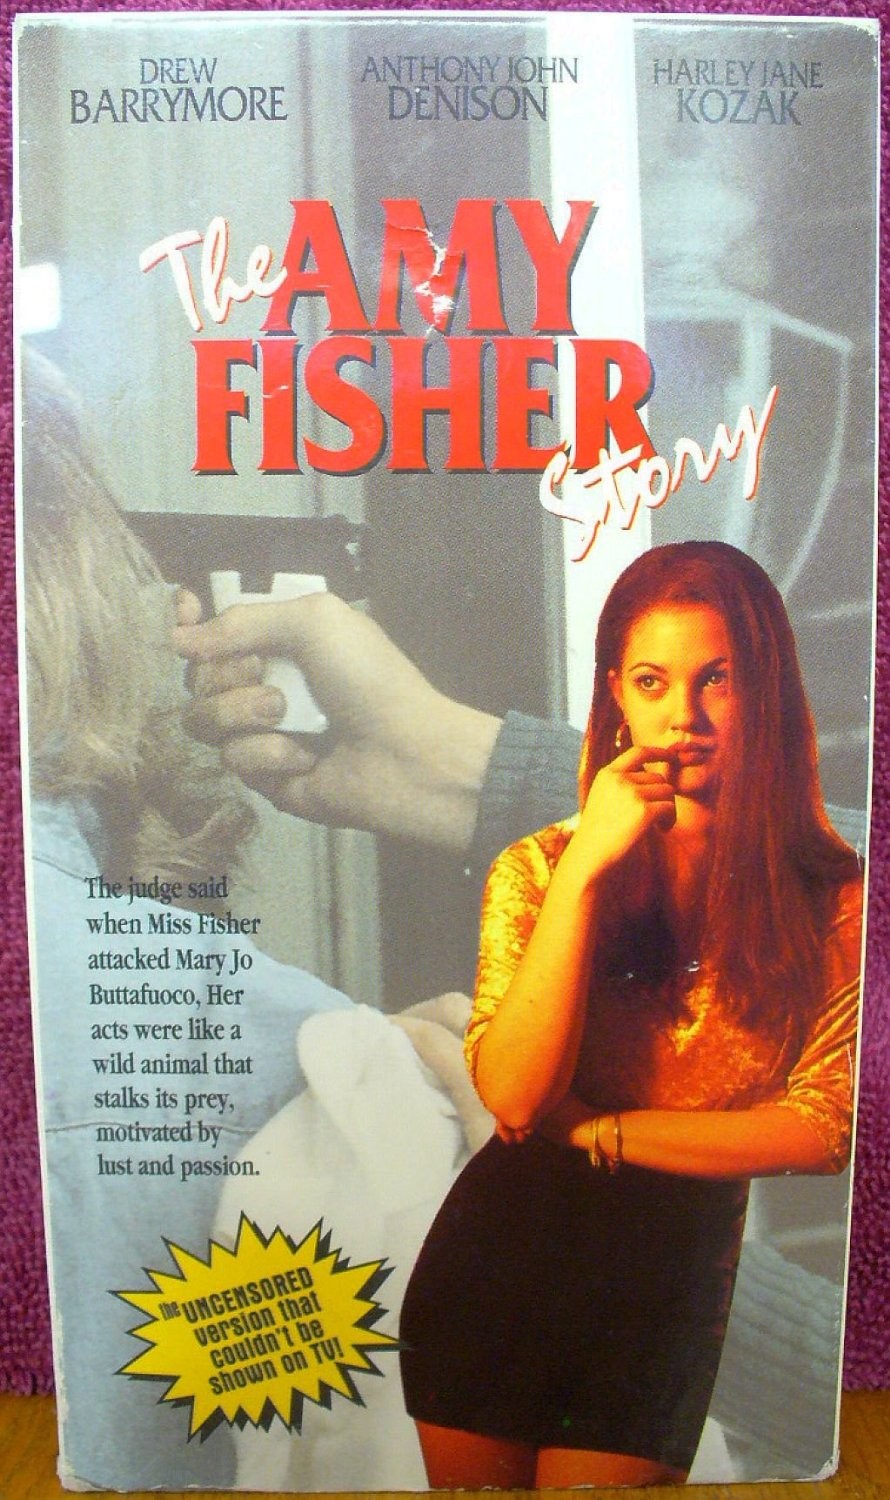 История Эми Фишер / The Amy Fisher Story (1993) отзывы. Рецензии. Новости кино. Актеры фильма История Эми Фишер. Отзывы о фильме История Эми Фишер